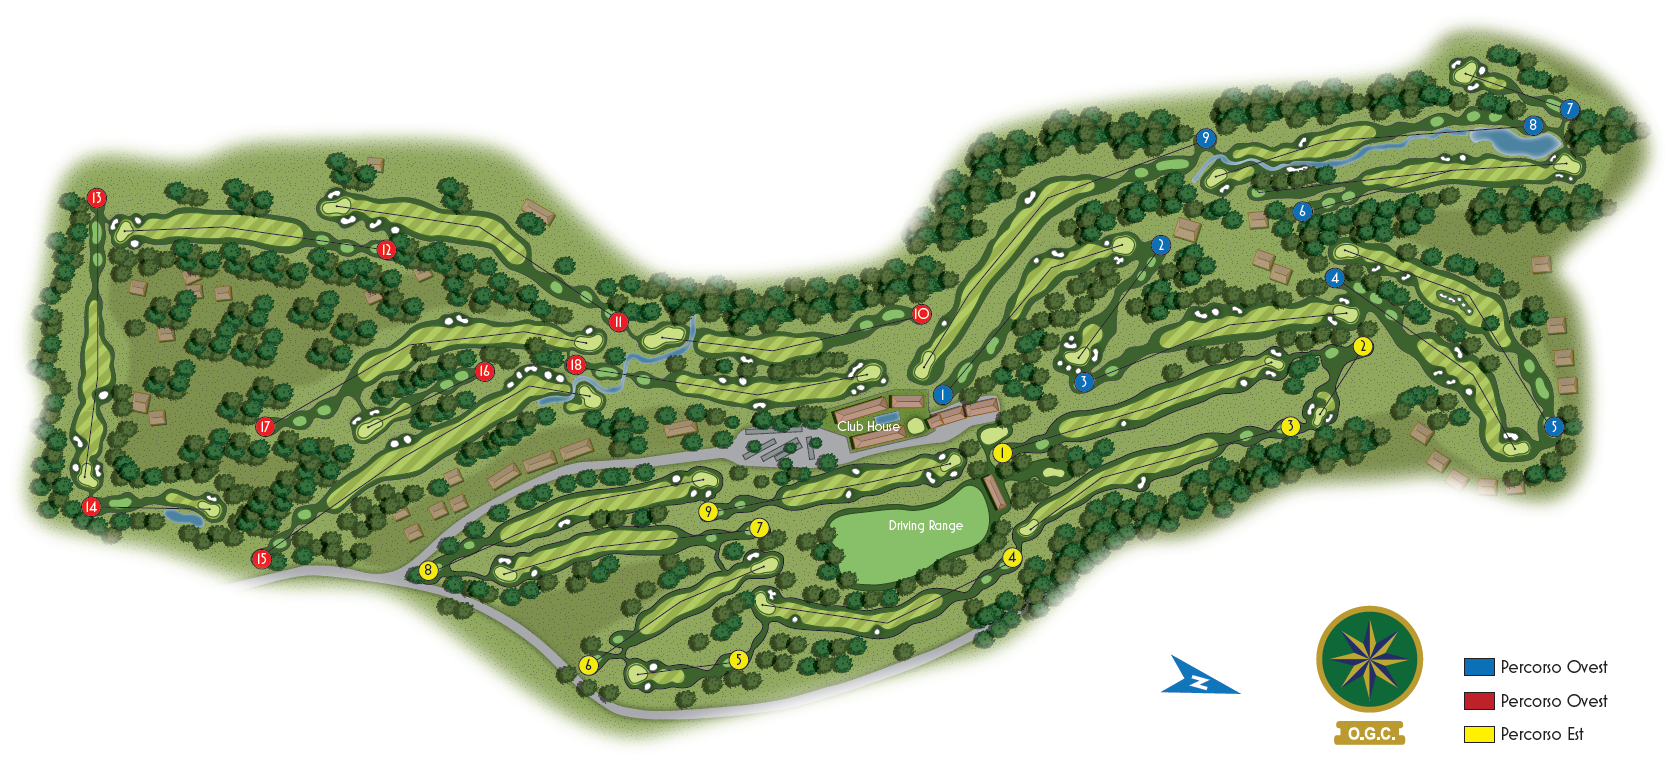 Maps Olgiata Golf Club